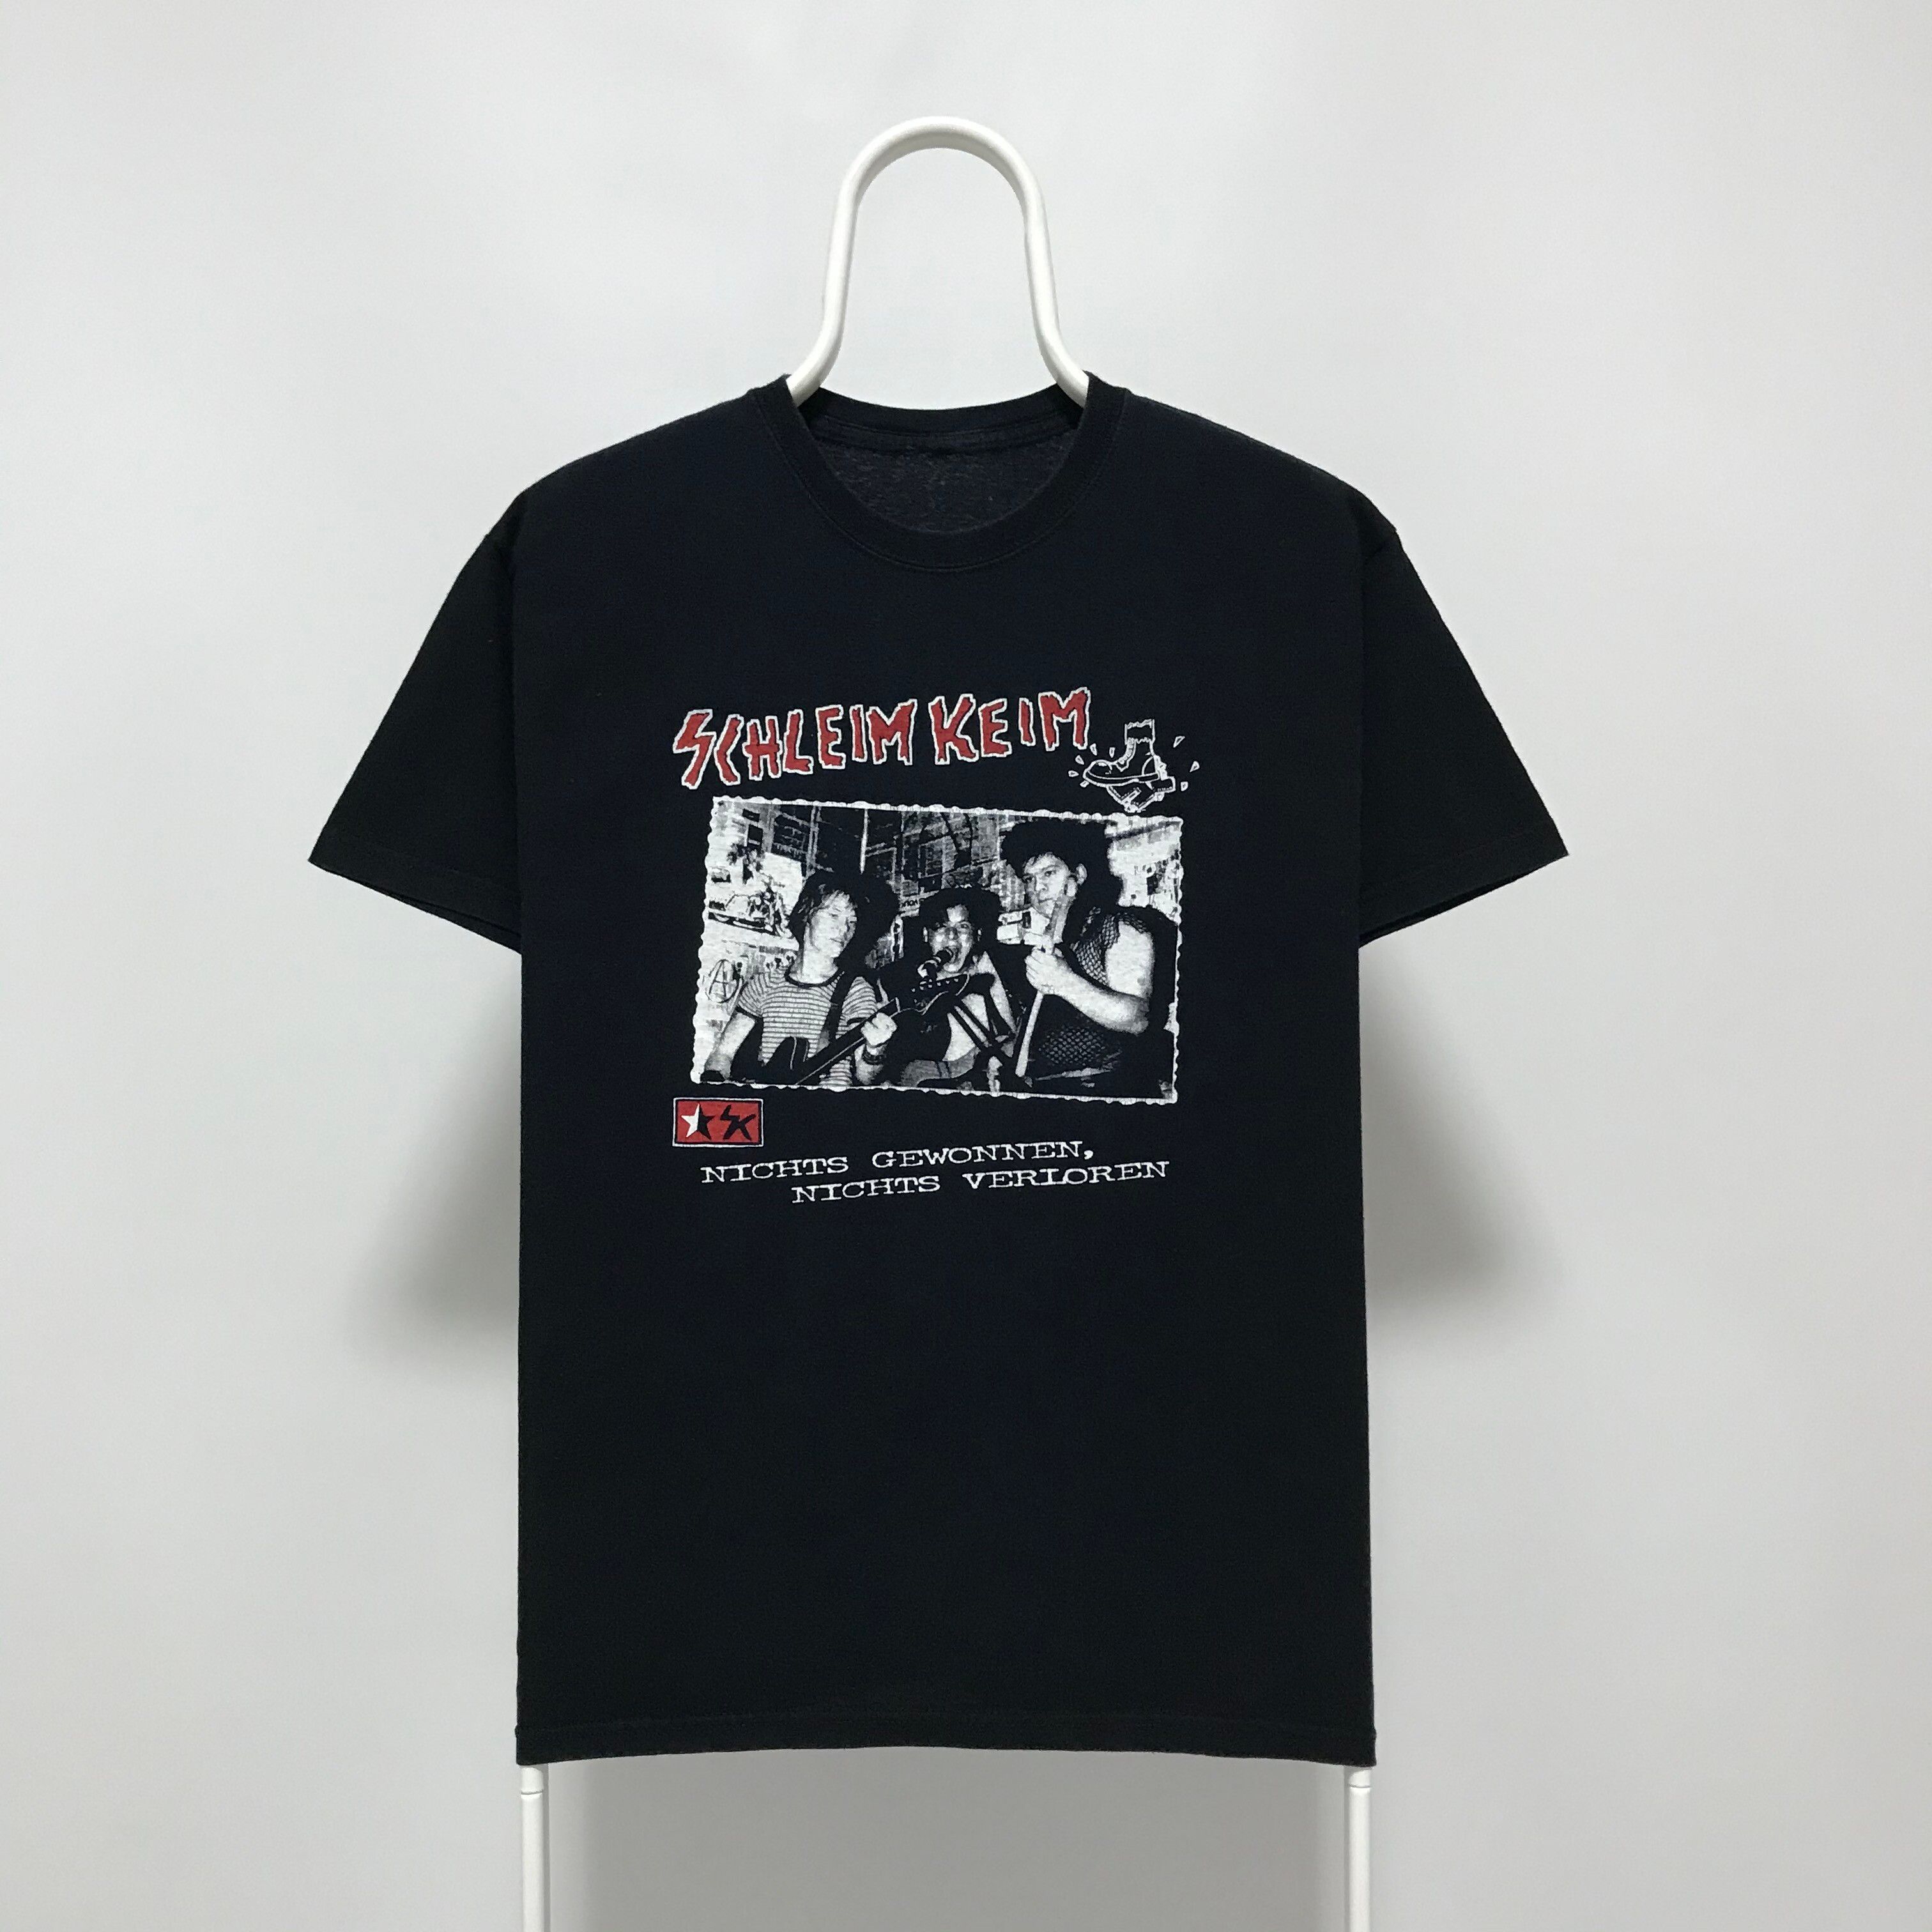 Vintage SCHLEIM KEIM 2000 Vintage T-Shirt Punk Rock Band Tee 90s | Grailed